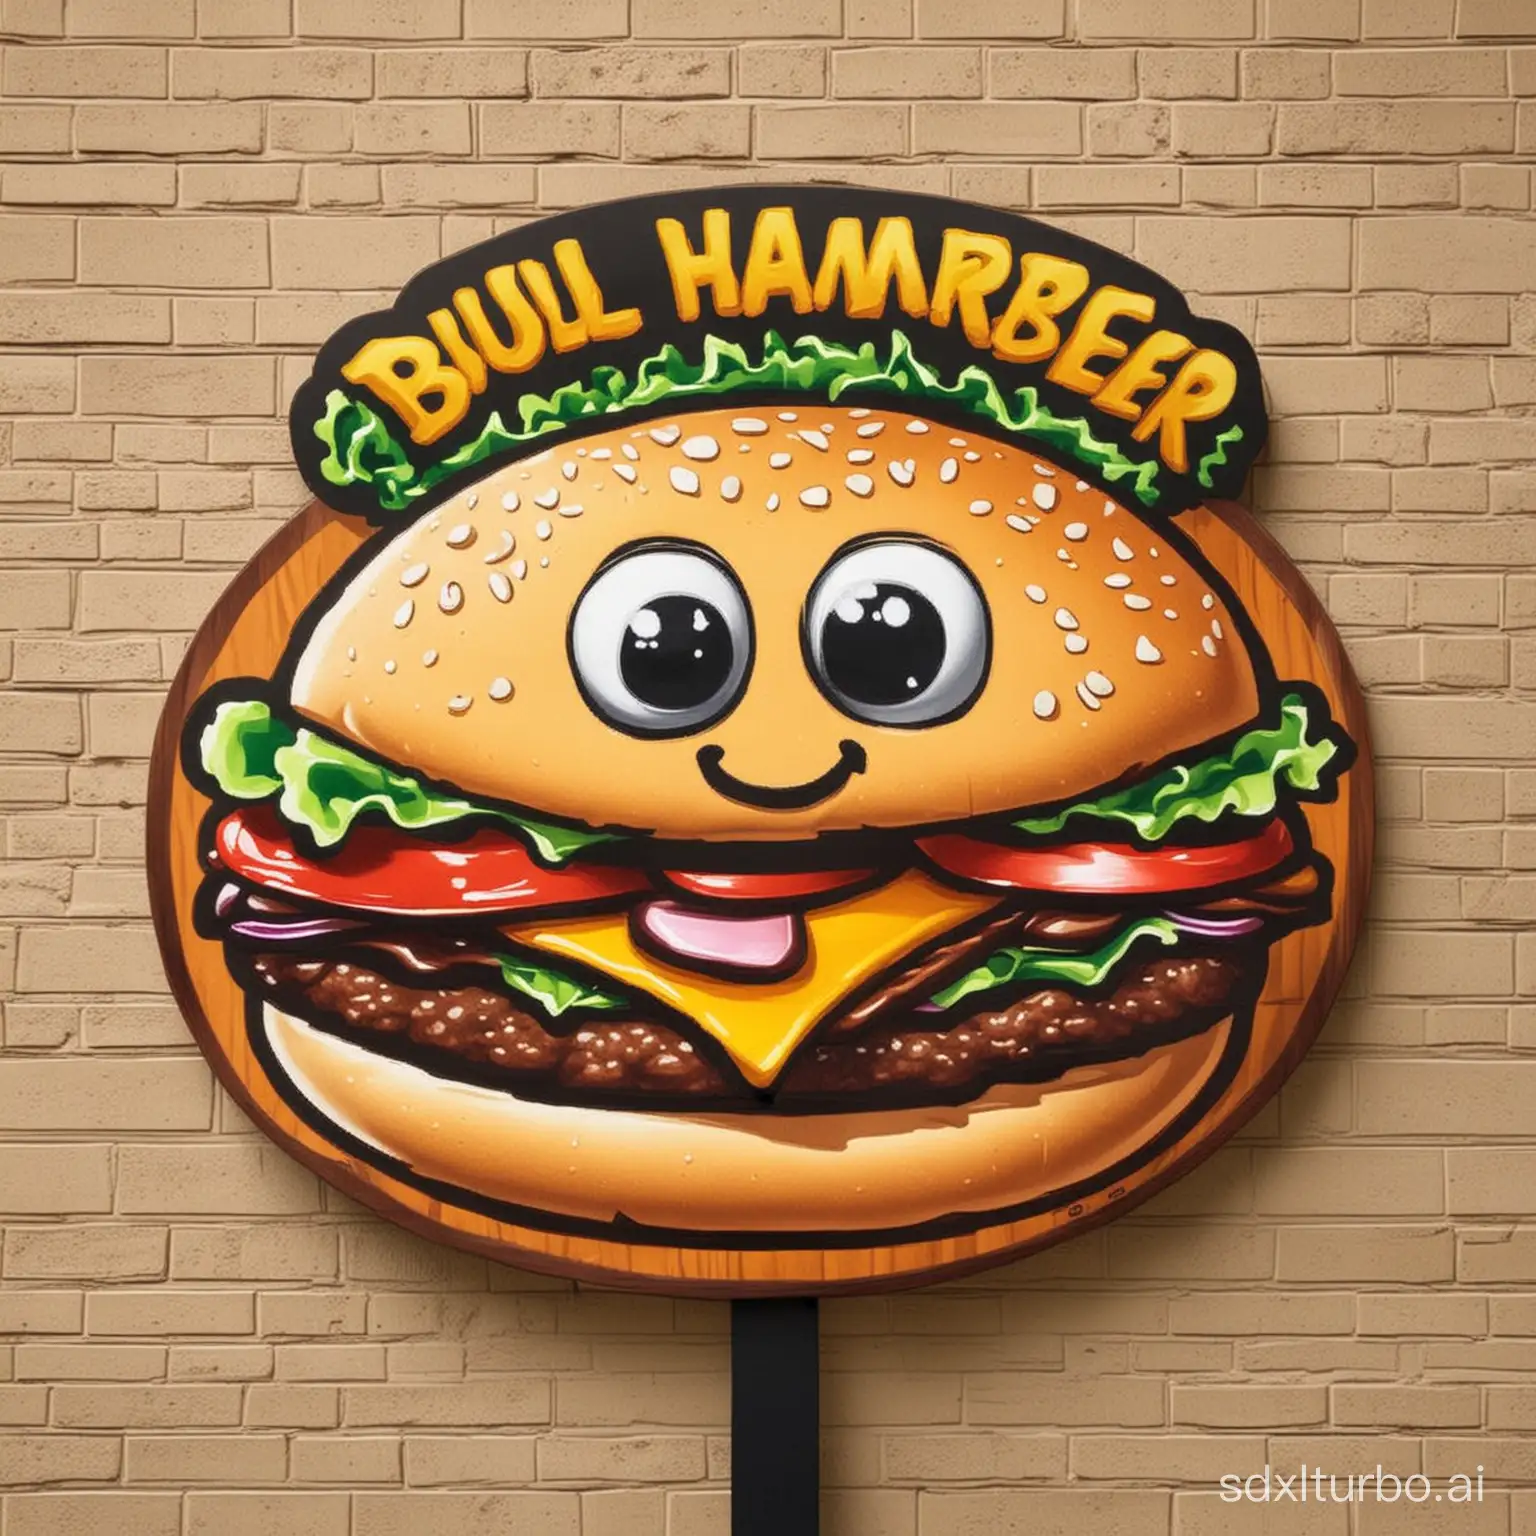 Make a cartoon hamburger sign, the sign name is Bull A Hamburger, to attract people